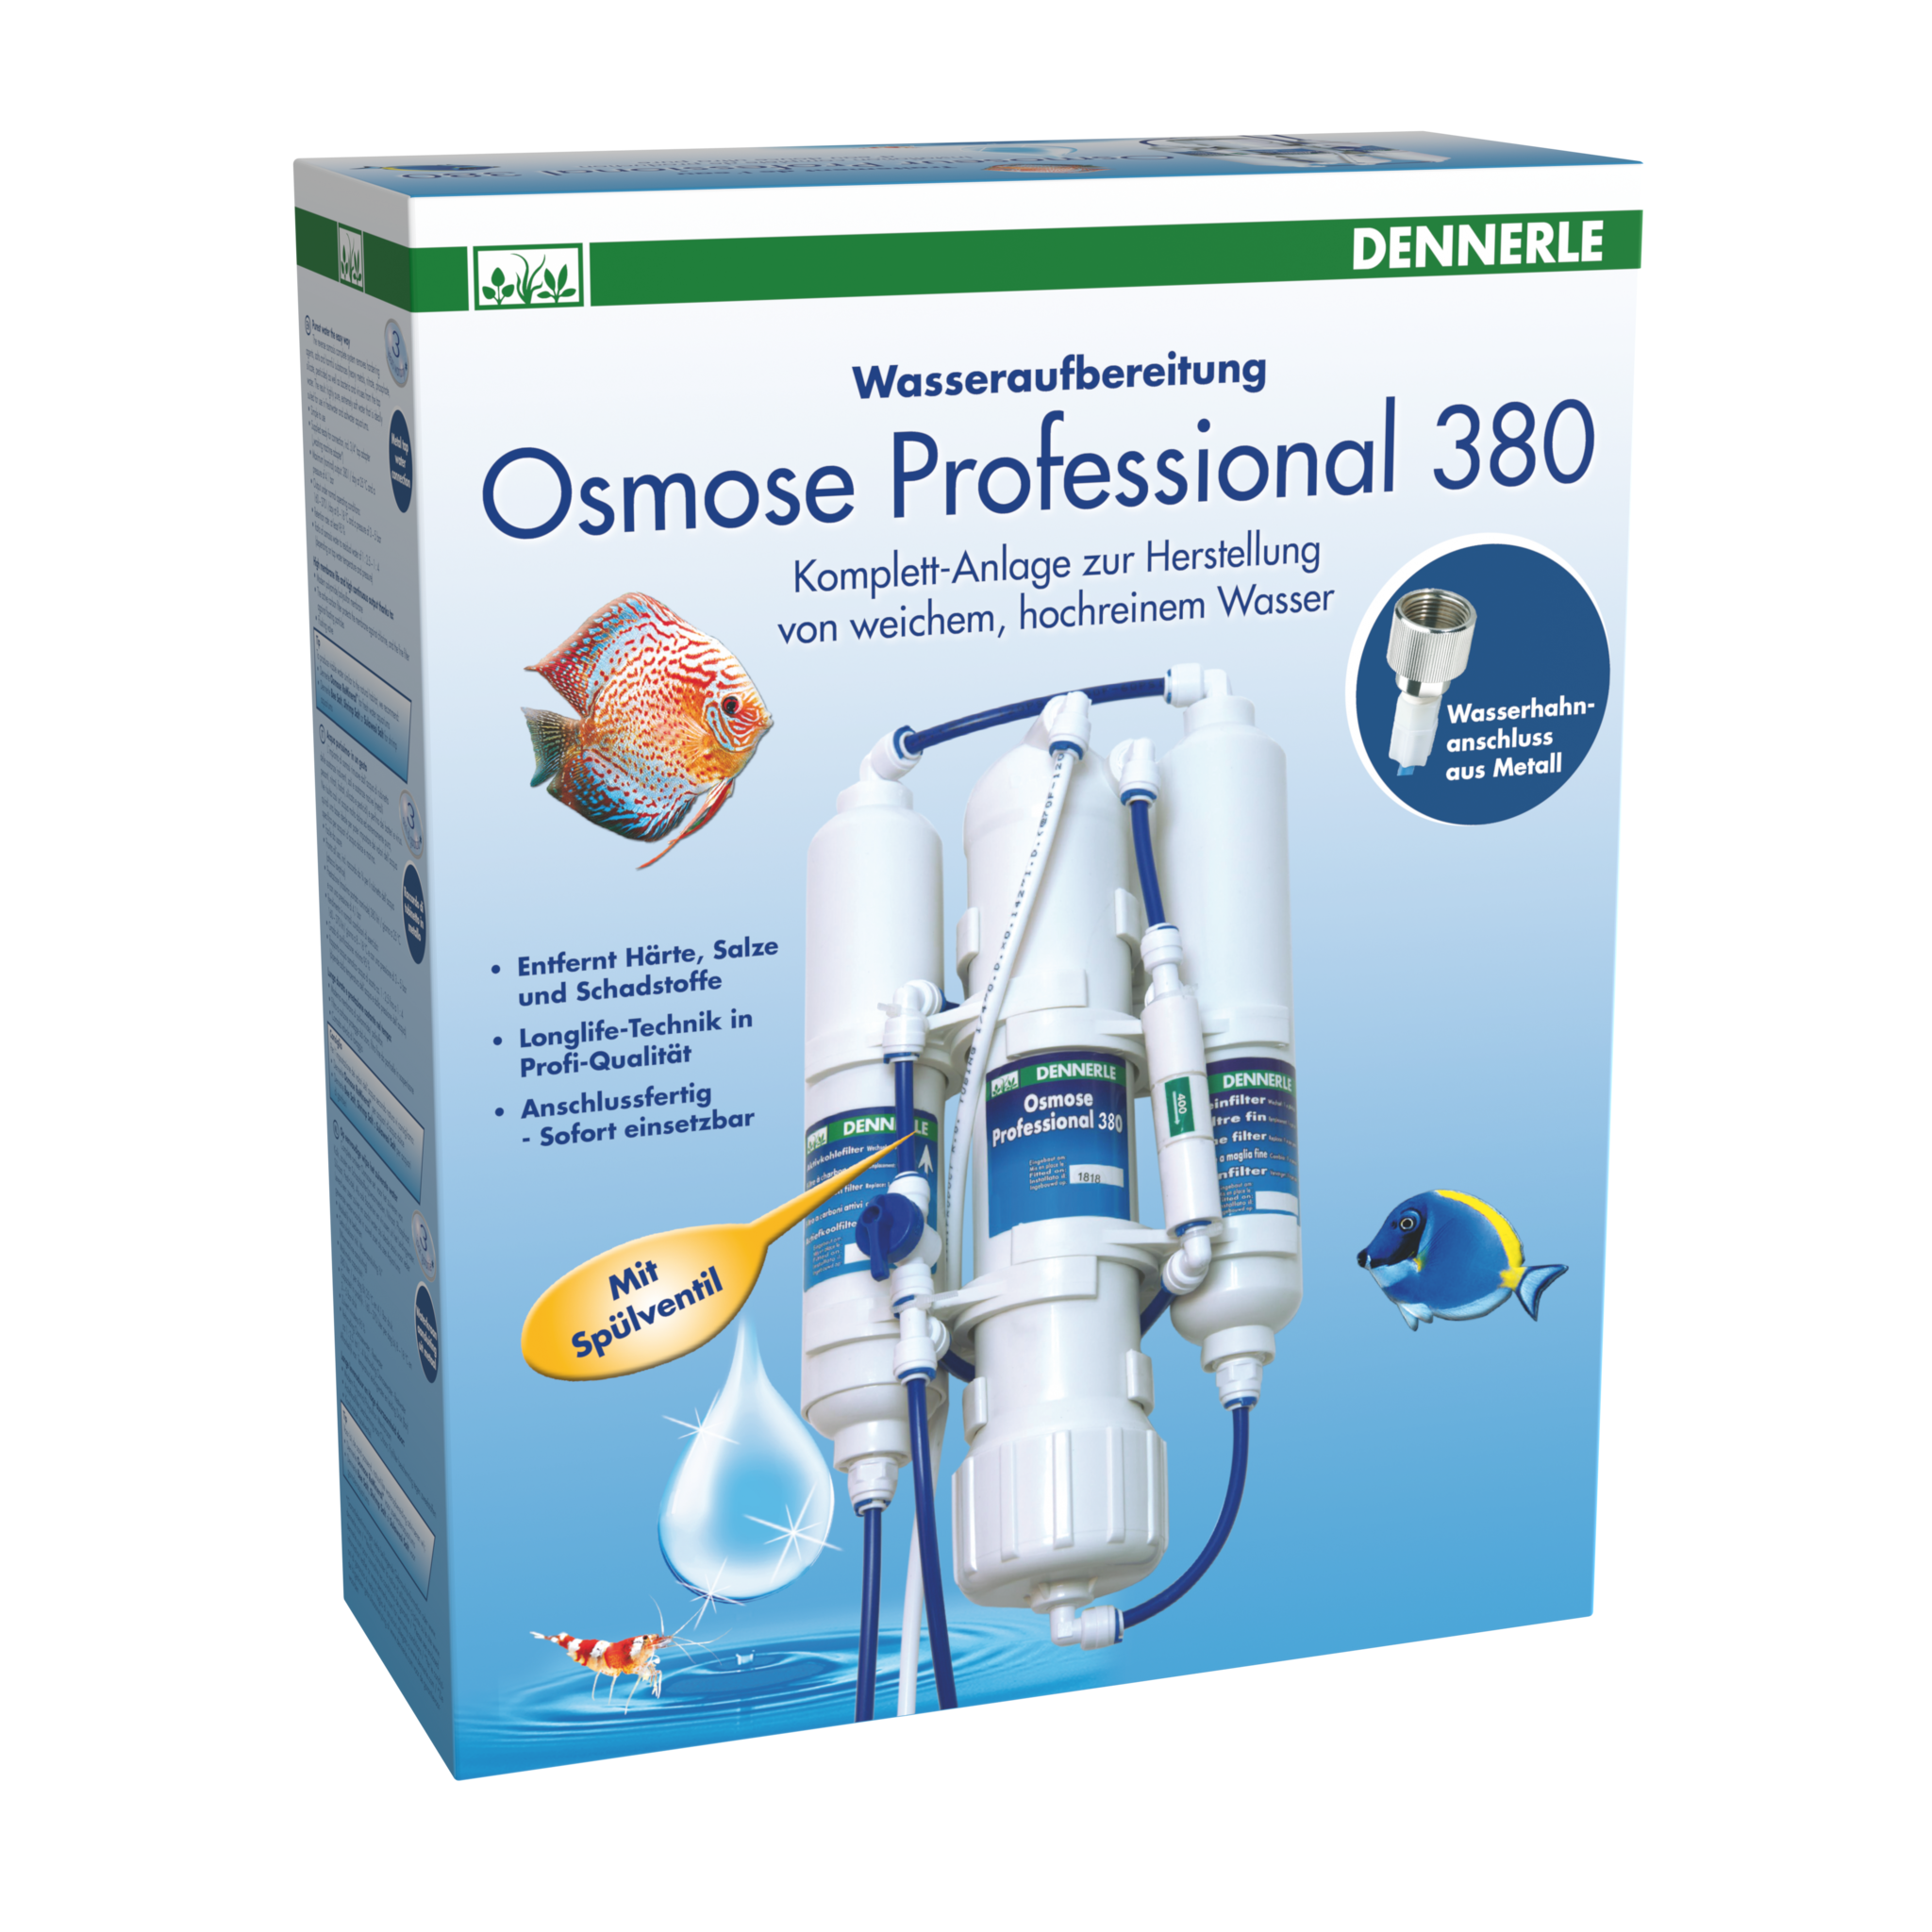 Dennerle Osmose Professional 380 - De Belgische webshop voor al uw  aquascaping producten en projecten.